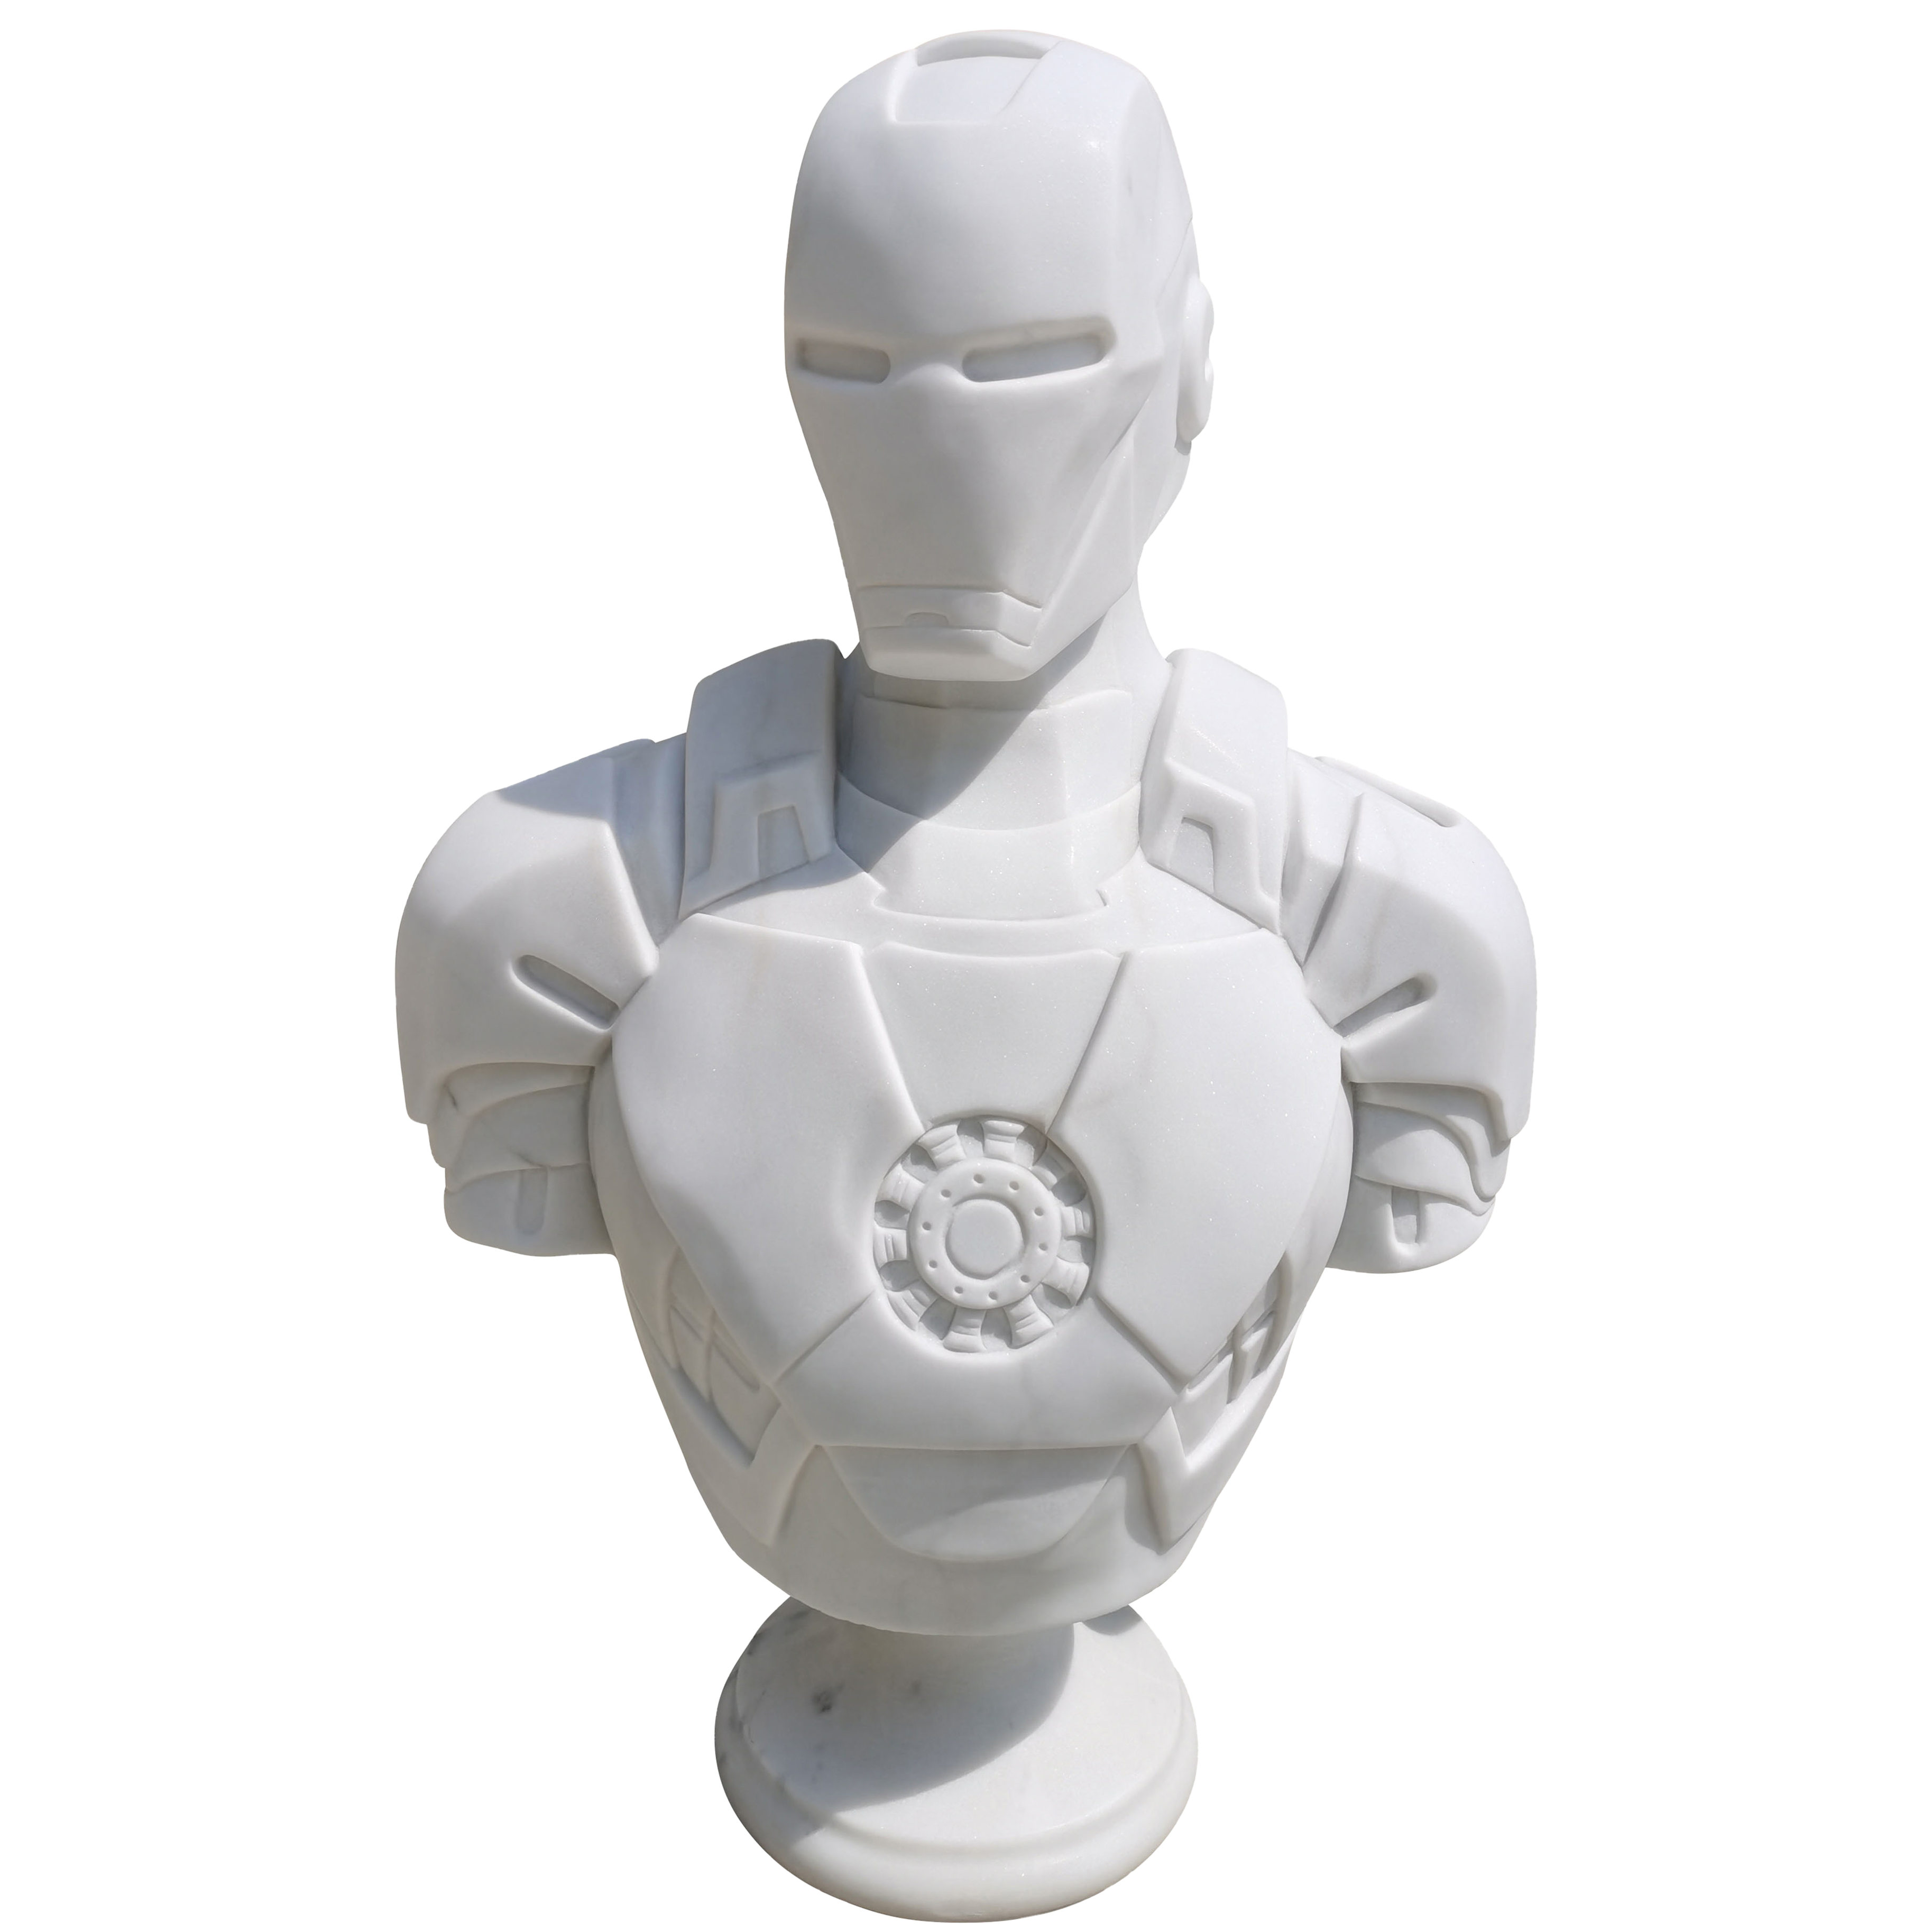 Cette image est une sculpture de l'artiste Léo Caillard, intitulée "The Stone Iron Man". Cette pièce de 90 cm, réalisée en marbre blanc représente un buste du héros Marvel, Iron Man avec son casque. Vous pouvez retrouver cette pièce à la Galerie Montmartre à Paris, France.